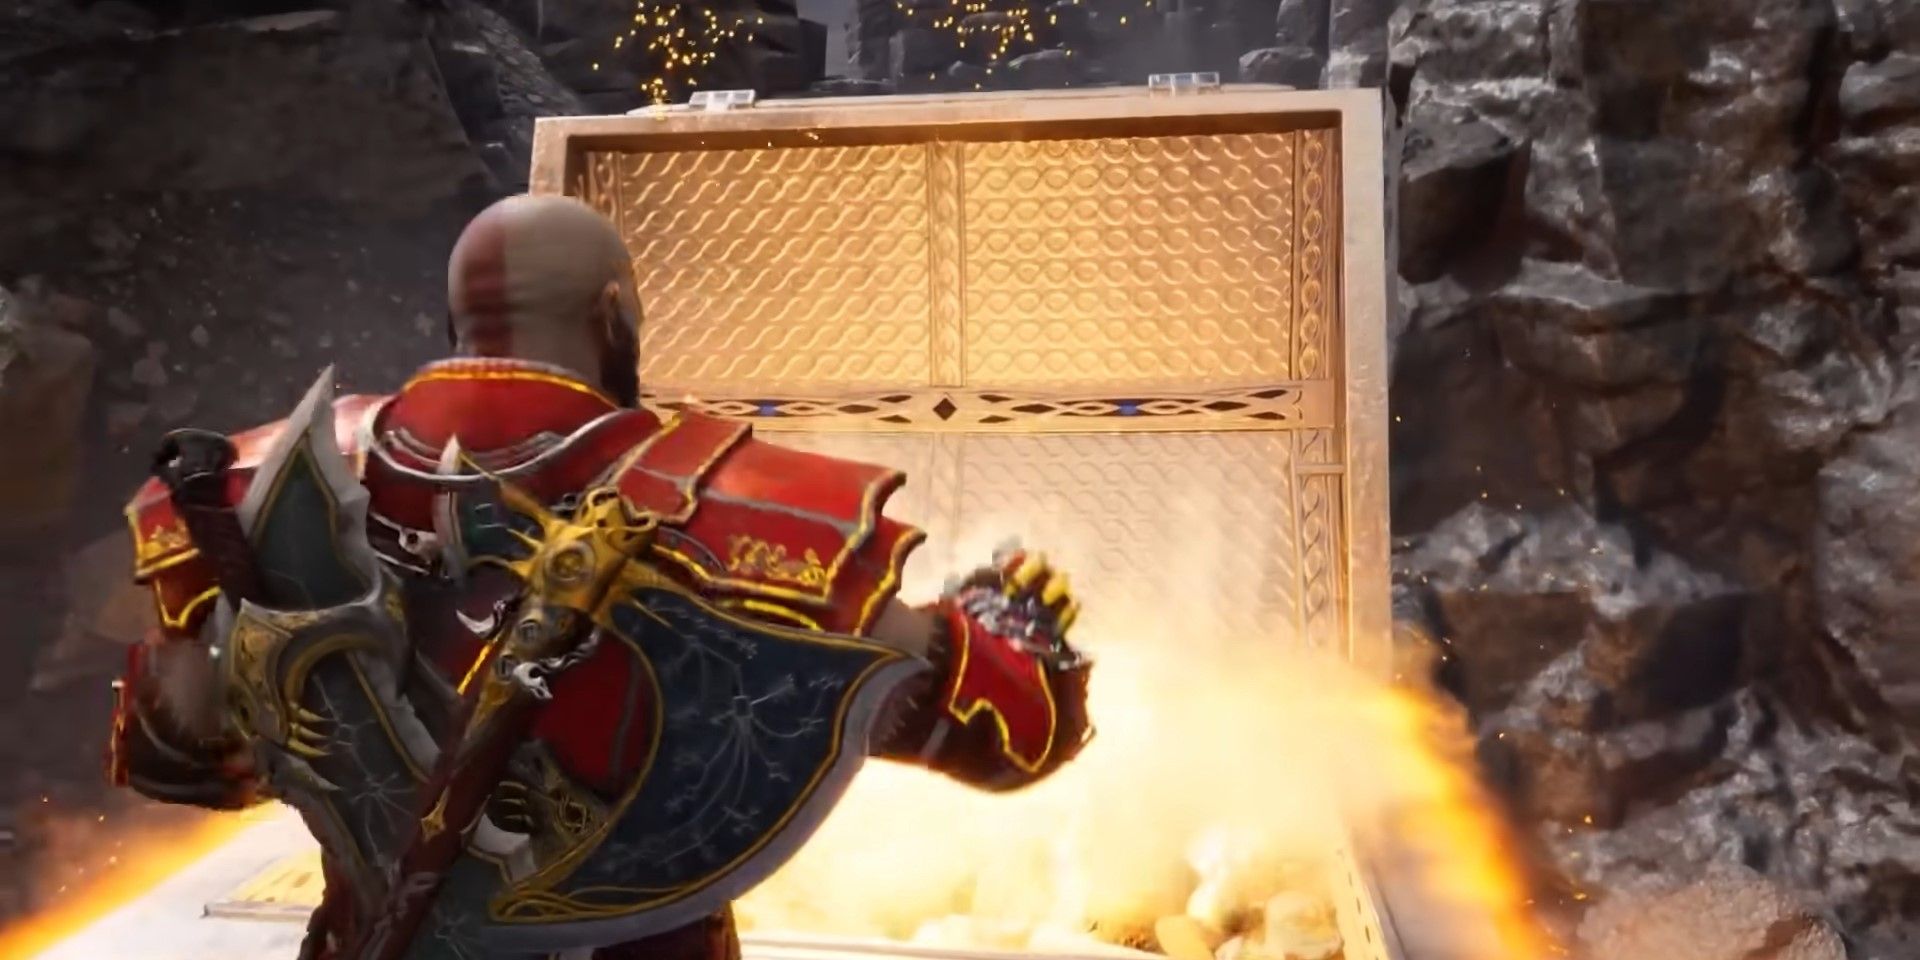 Kratos opening a Legendary Chest in God of War Ragnarok Valhalla.